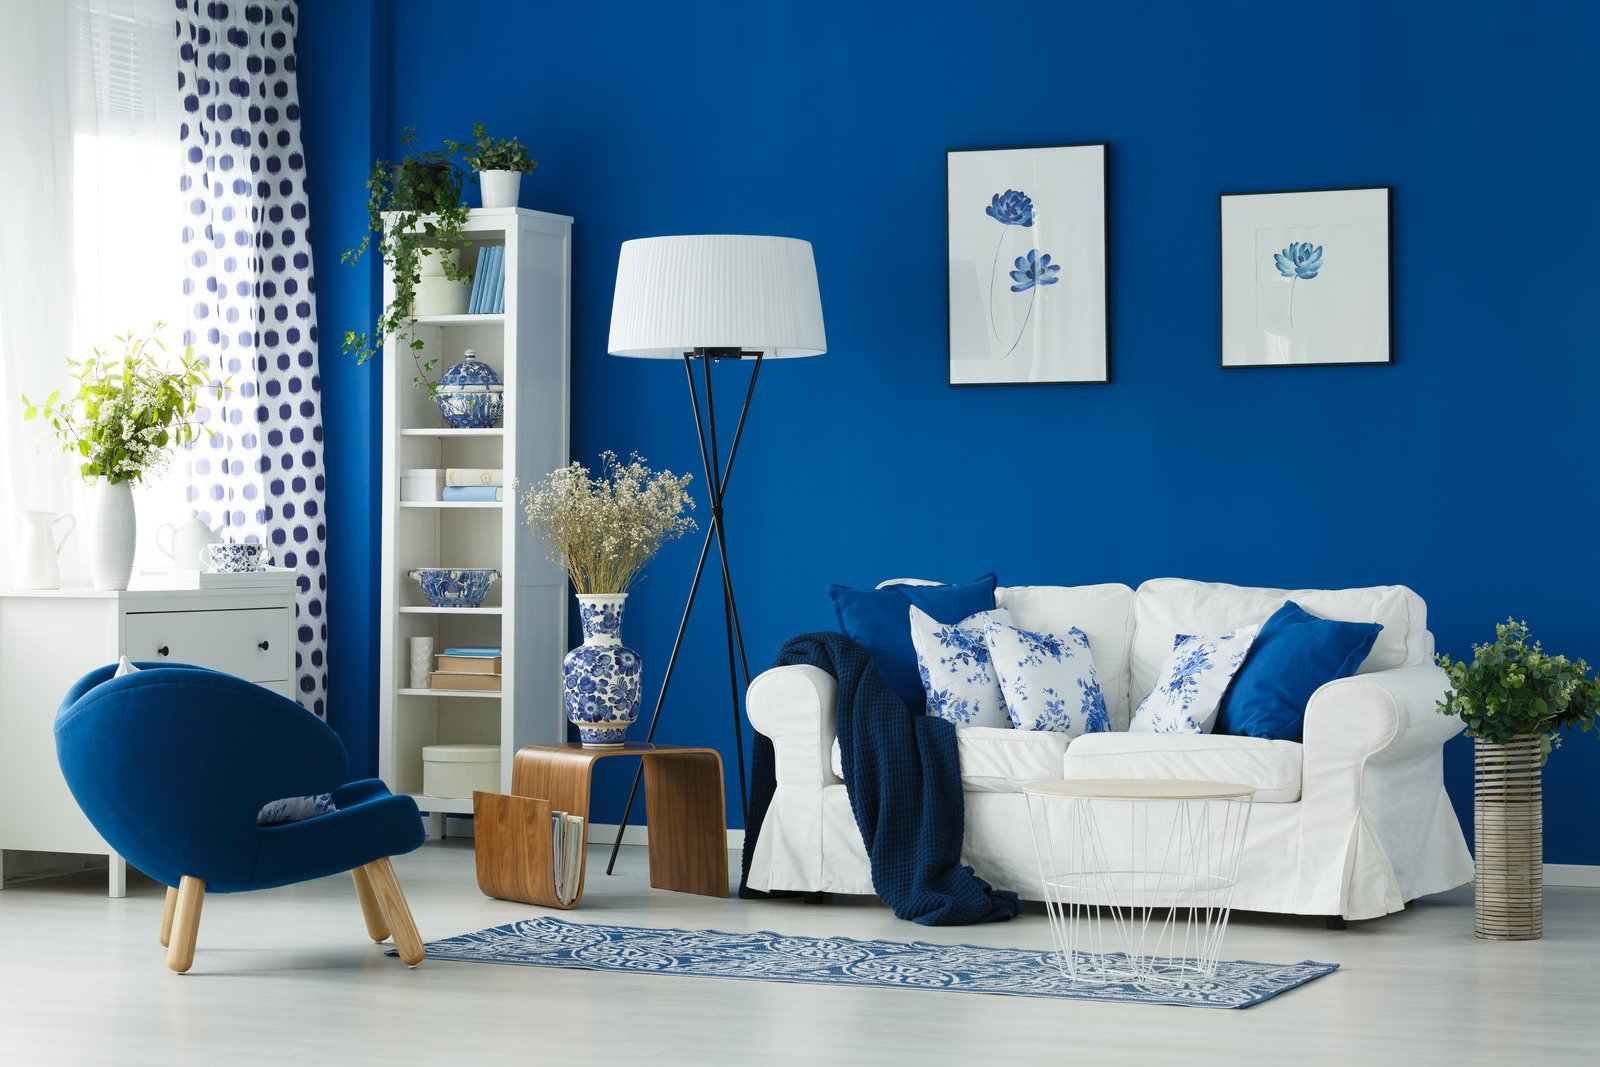 niebieska ściana i dodatki, biała sofa